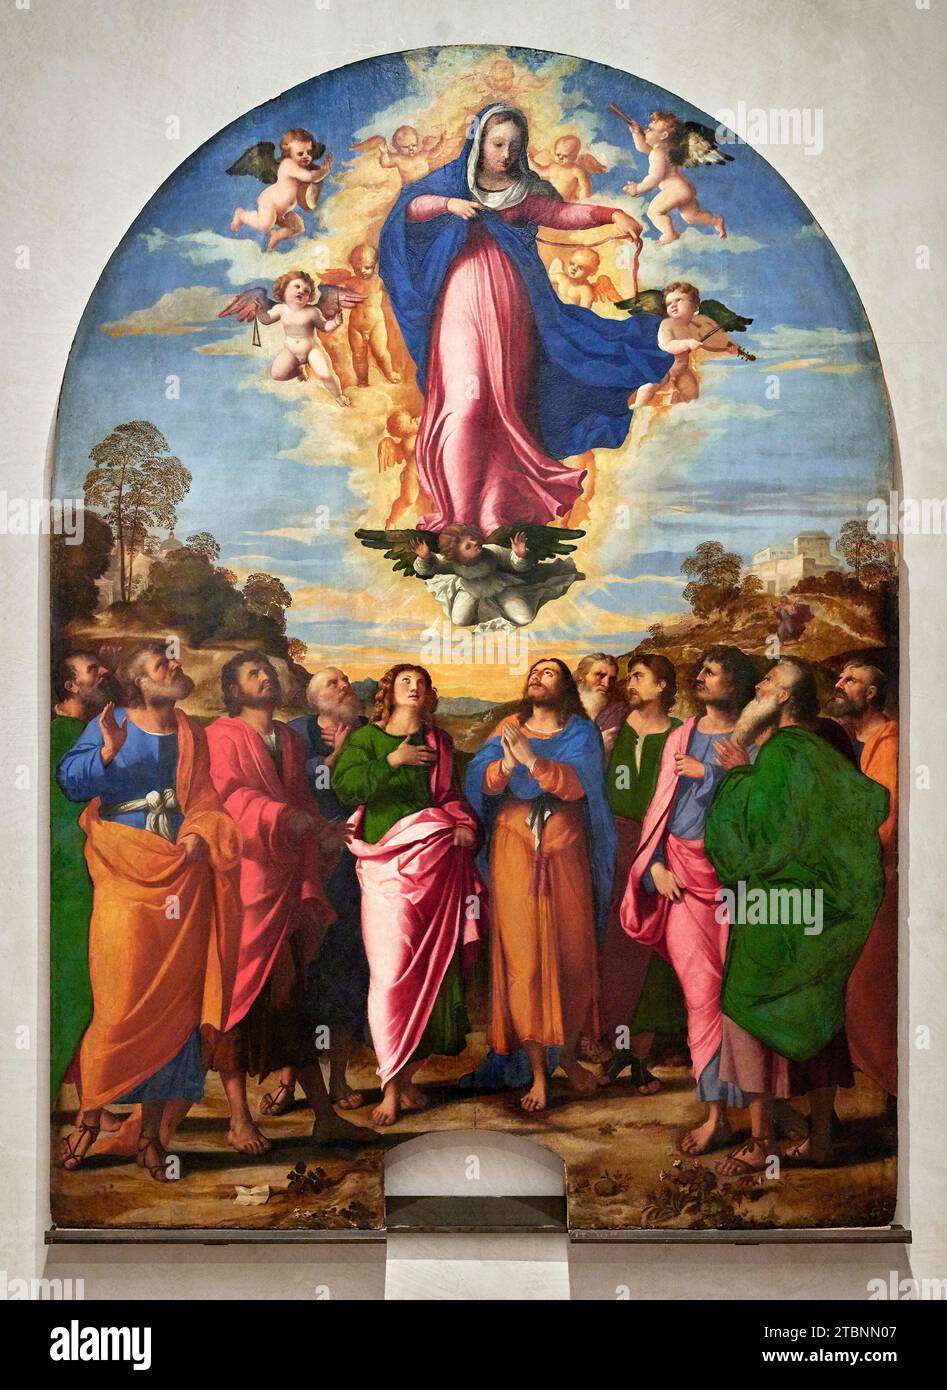 Assunzione della Vergine - olio su tavola  - Jacopo Negretti detto Palma il Vecchio  - 1513 - Venezia, Gallerie dell’ Accademia Stock Photo